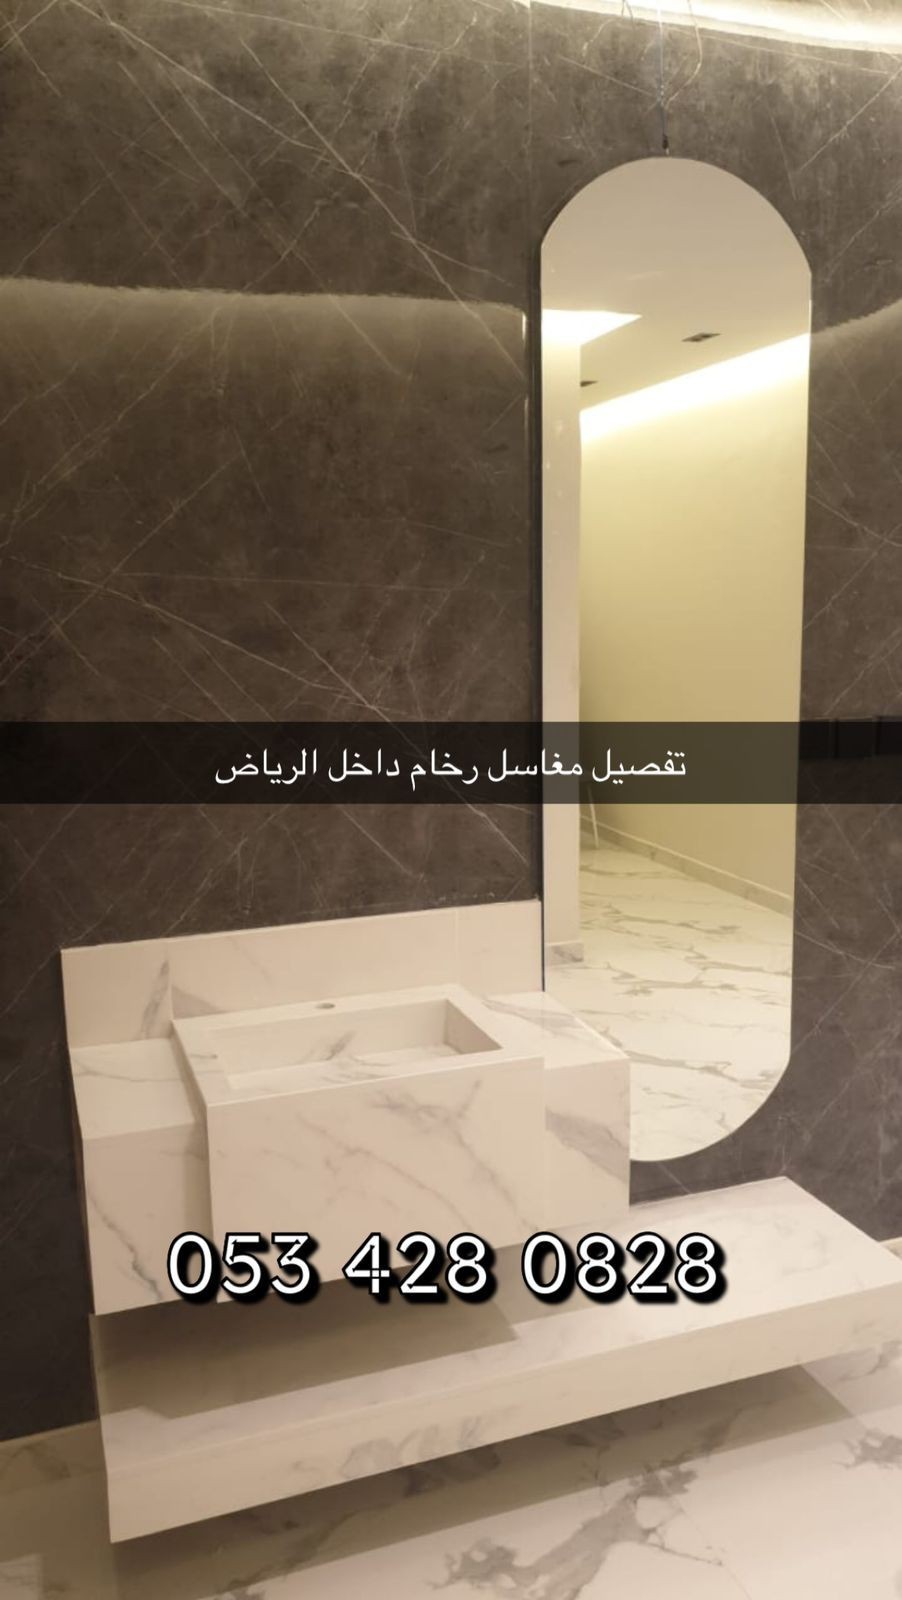 مغاسل رخام - مغاسل الرياض